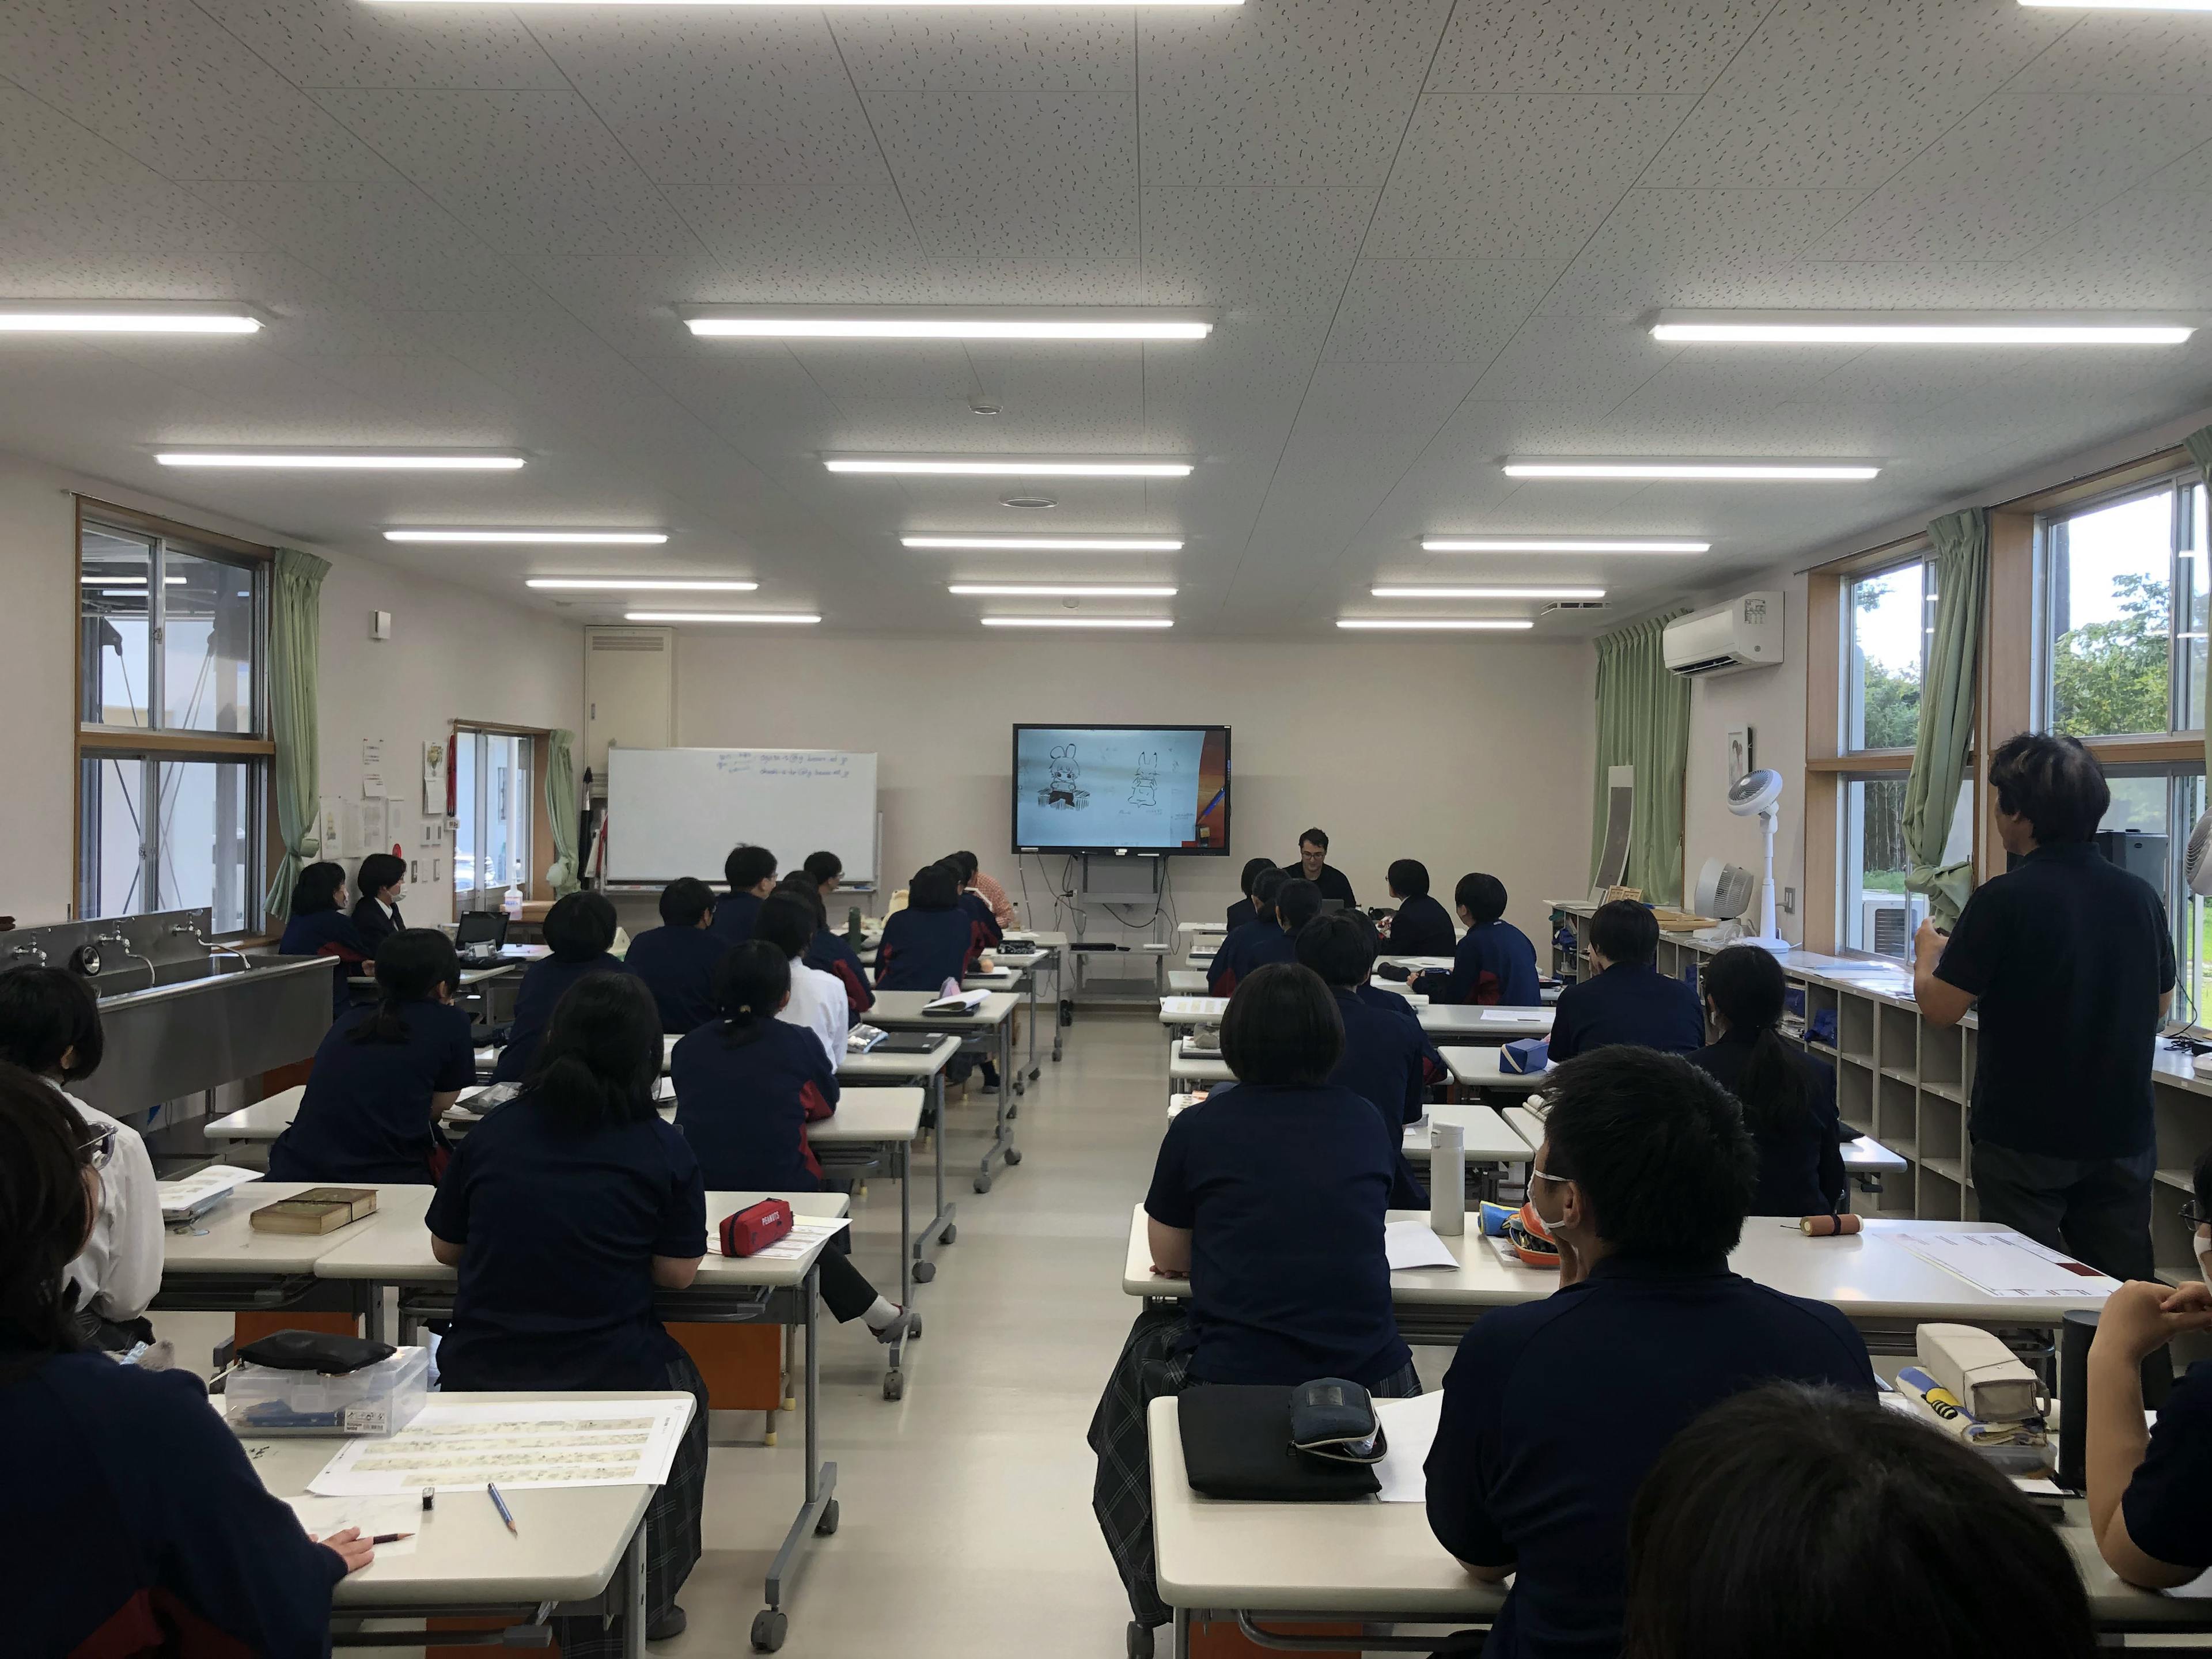 تم تقديم قسم المانجا بمدرسة تاكاموري الثانوية في برنامج "السؤال الكبير لـ 100 مليون شخص على قناة Nippon Television!؟ ابتسم والتقط الصور!"